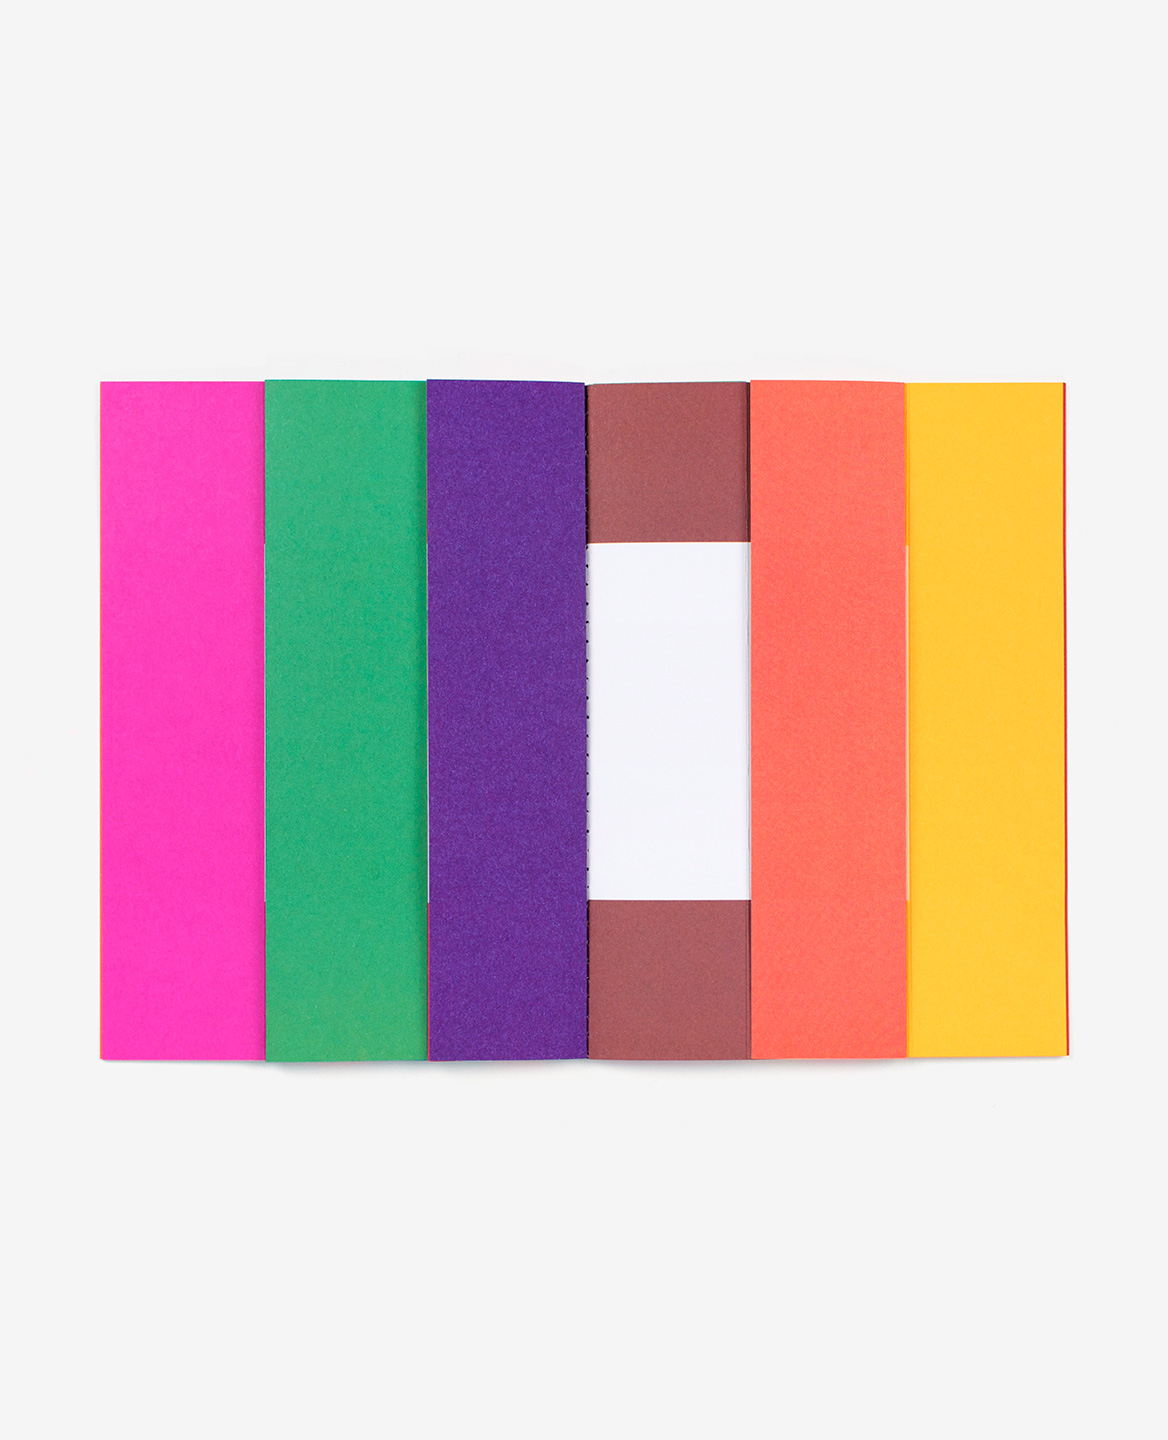 Mire colorée dans le livre Spaces d’Antonio Ladrillo